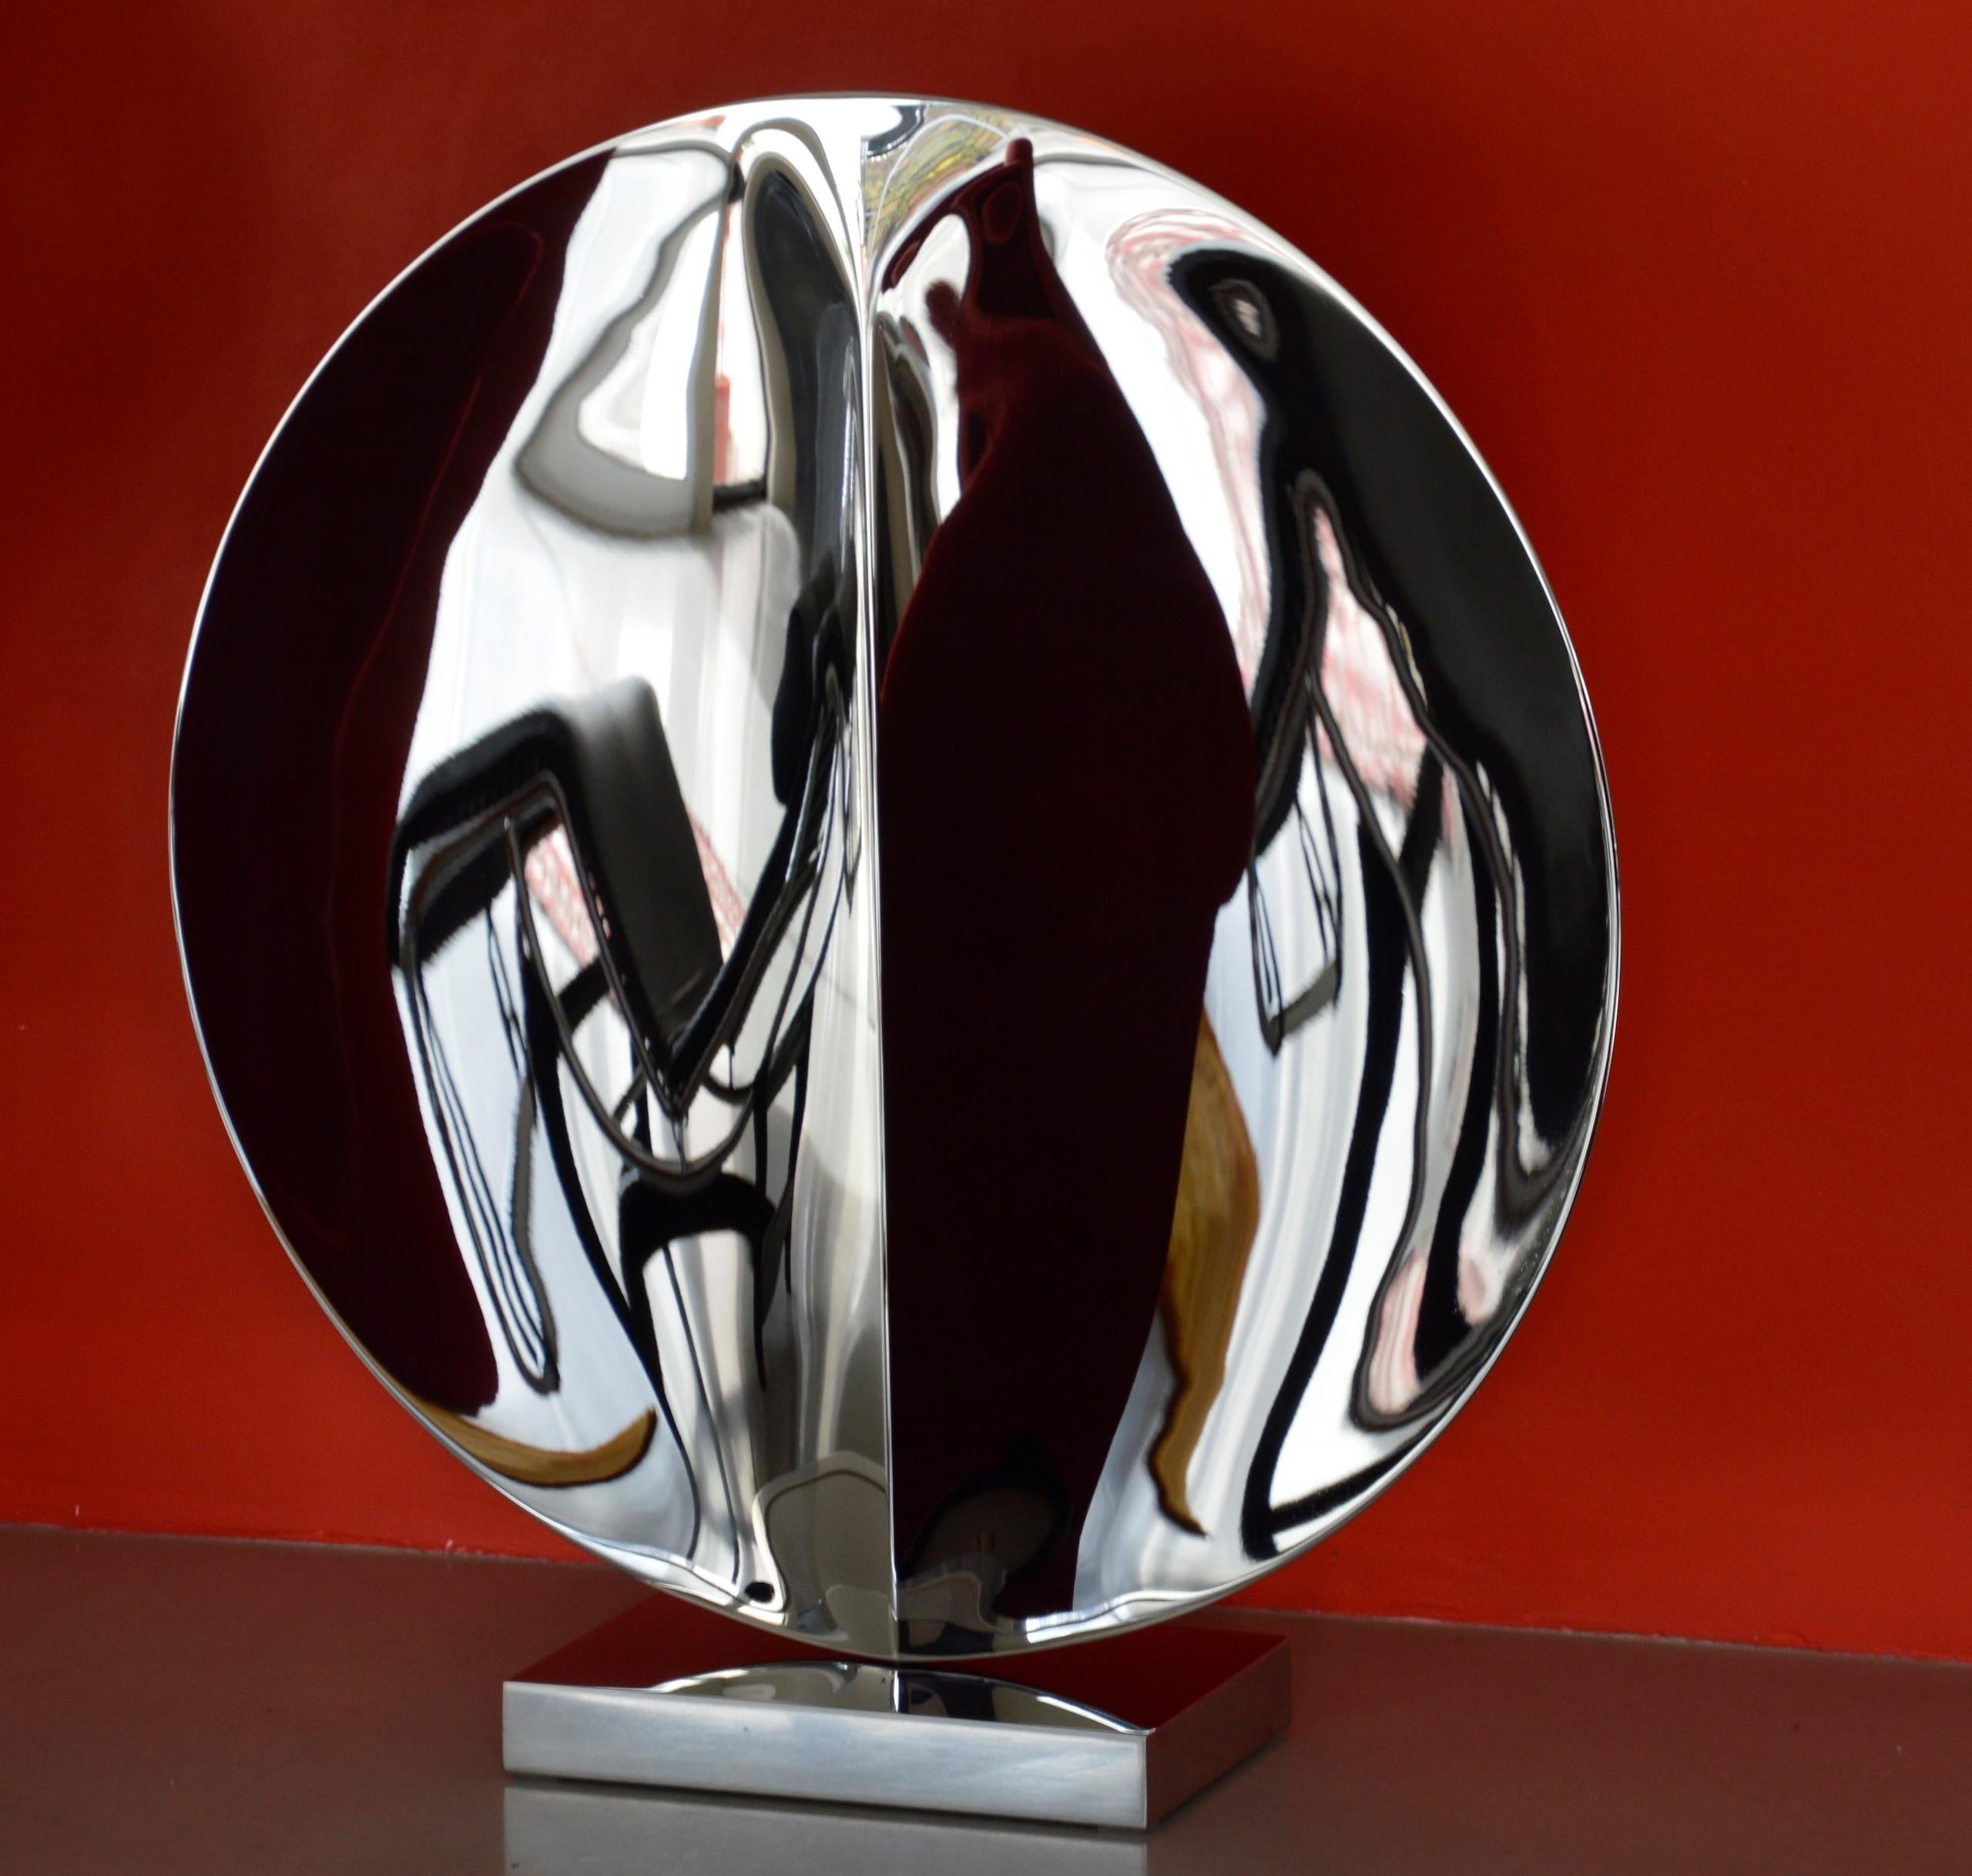 Mirror "with fold" I ist eine einzigartige Skulptur aus hochglanzpoliertem Edelstahl mit Sockel des zeitgenössischen Künstlers Franck K. Die Abmessungen betragen 77 × 73 × 20 cm (30,3 × 28,7 × 7,9 in). 
Die Skulptur ist signiert und wird mit einem